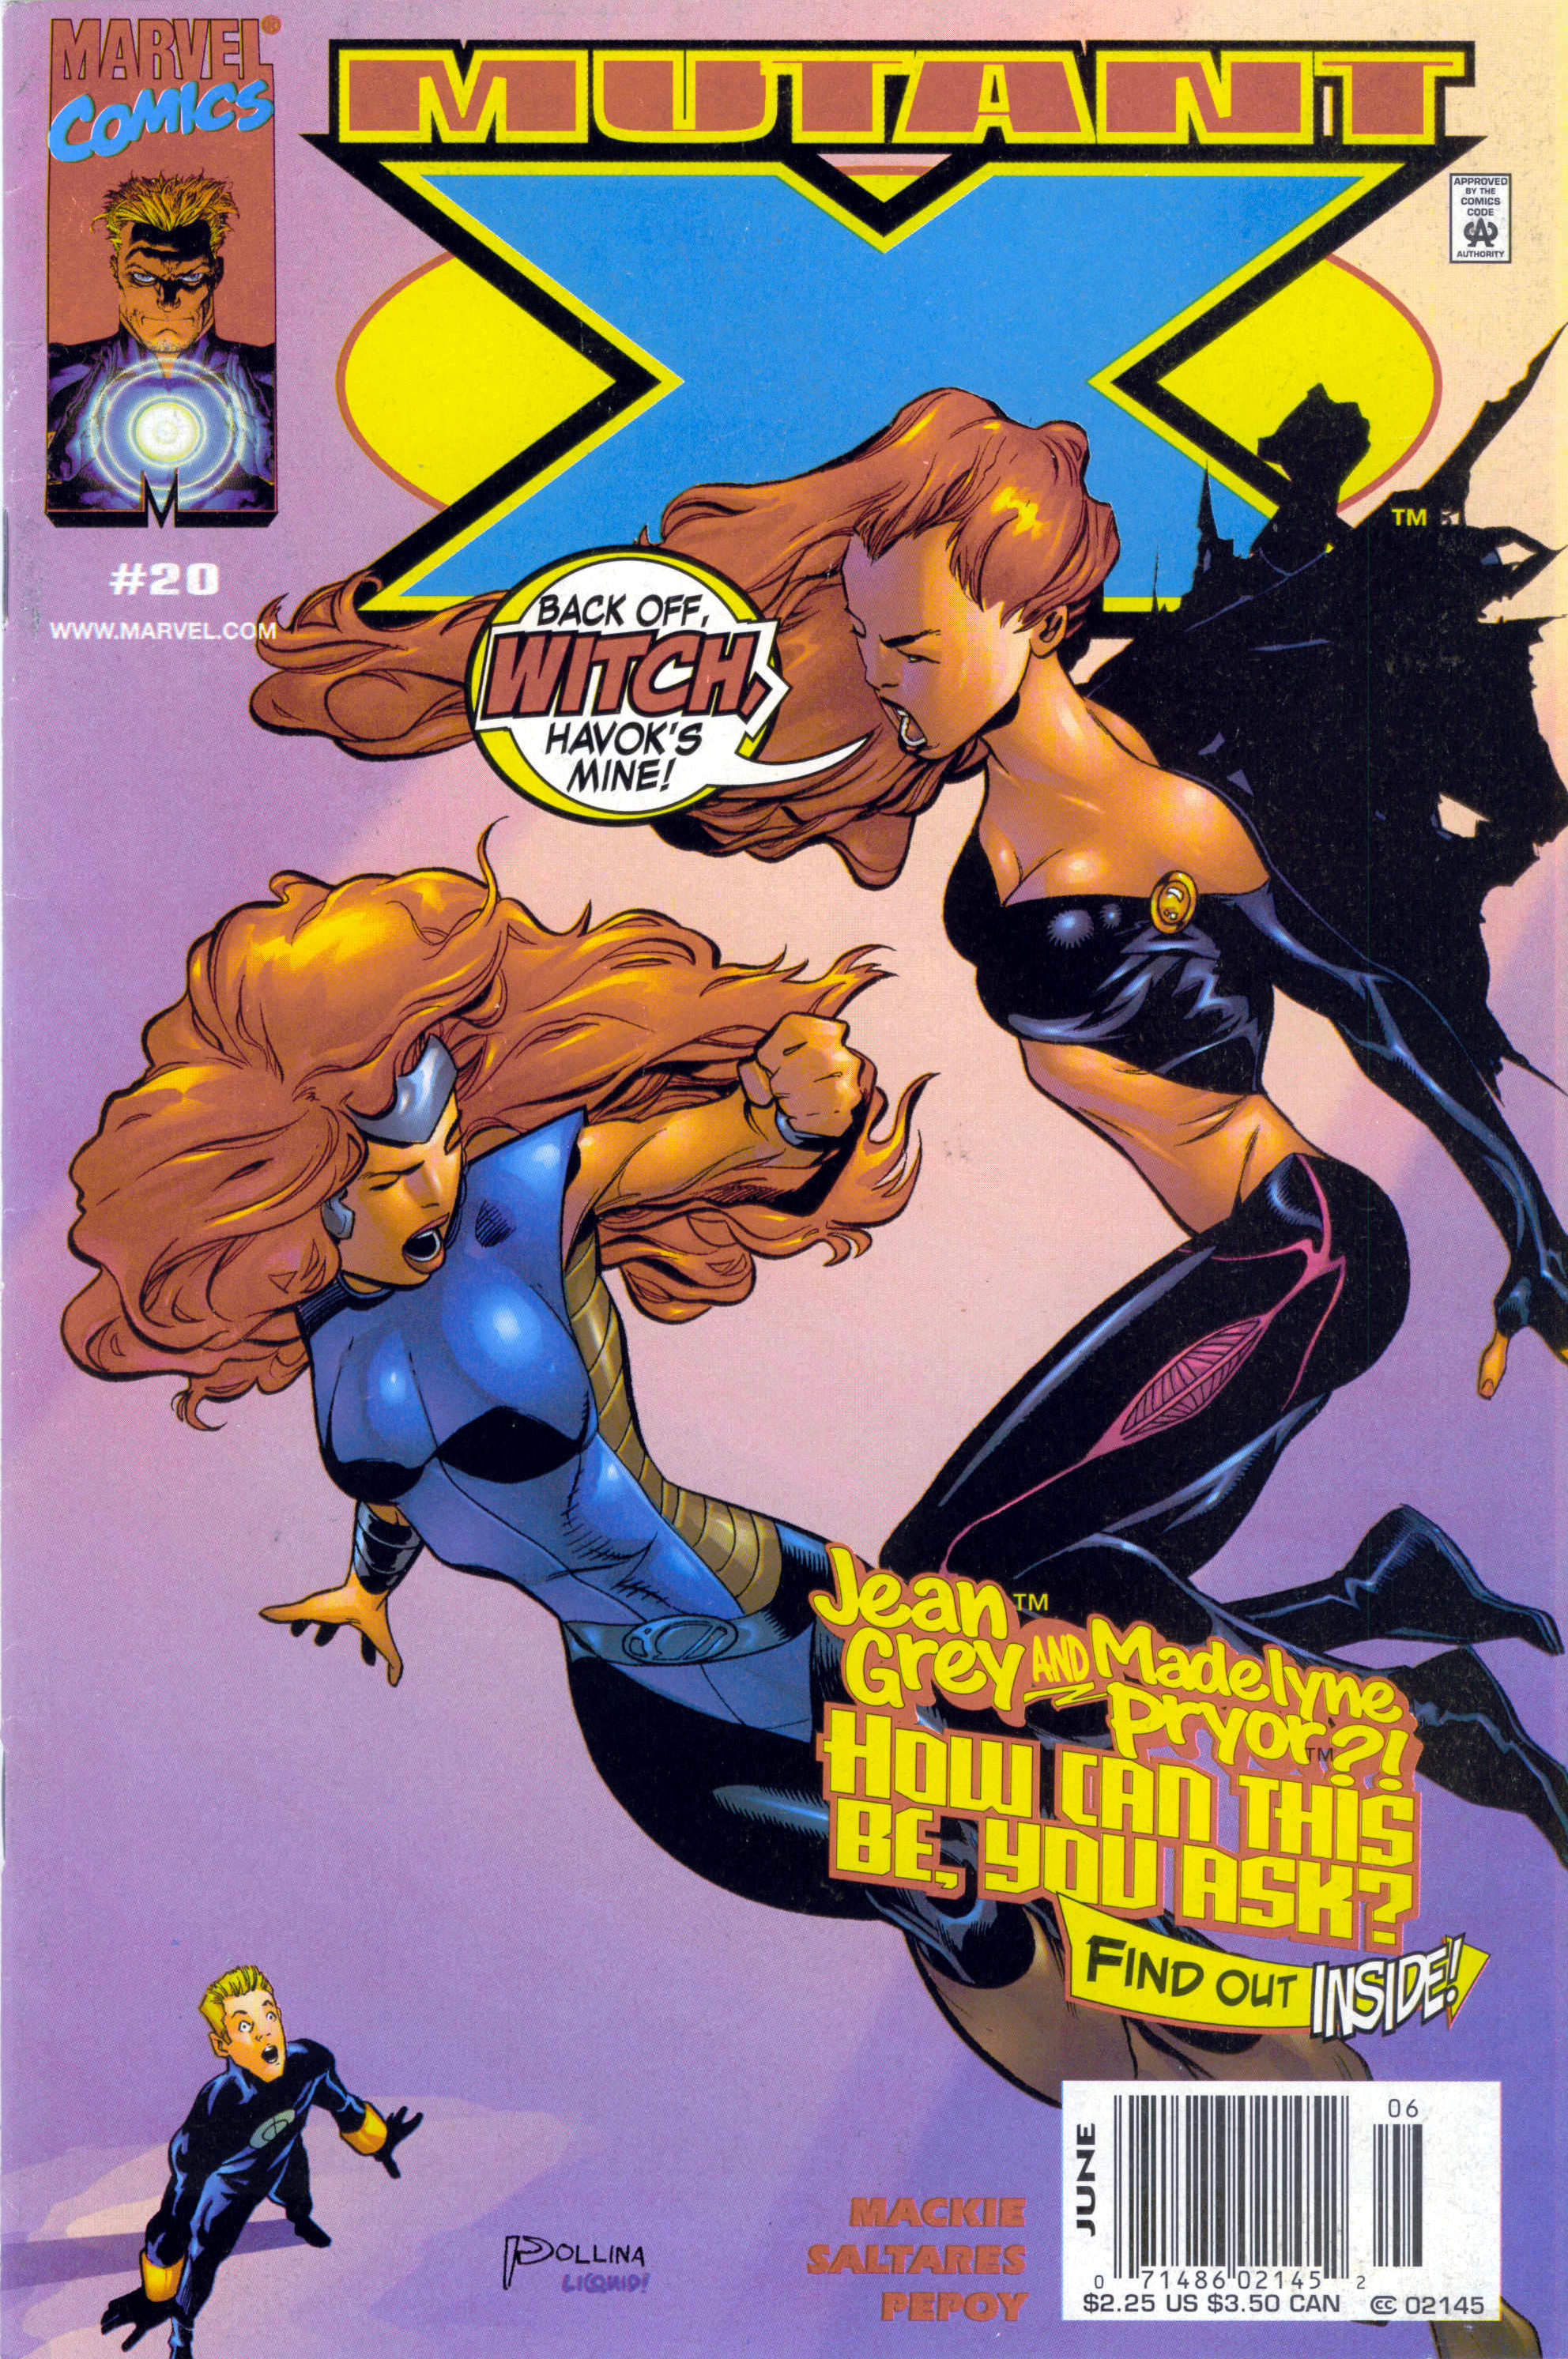 Mutant X Vol. 1 #20